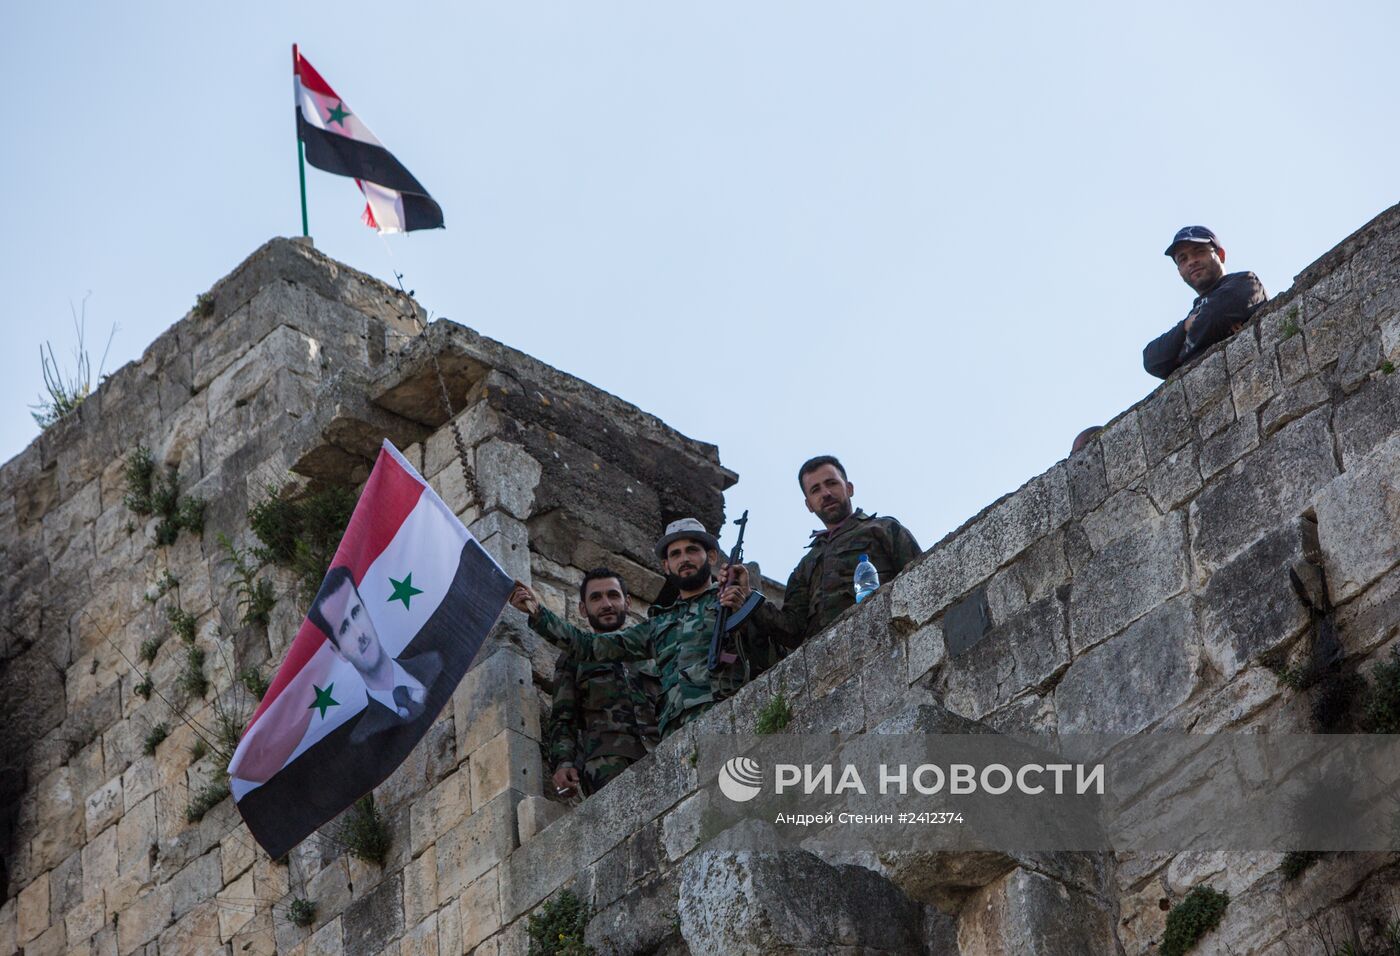 Освобожденная от боевиков крепость Крак де Шевалье в Сирии